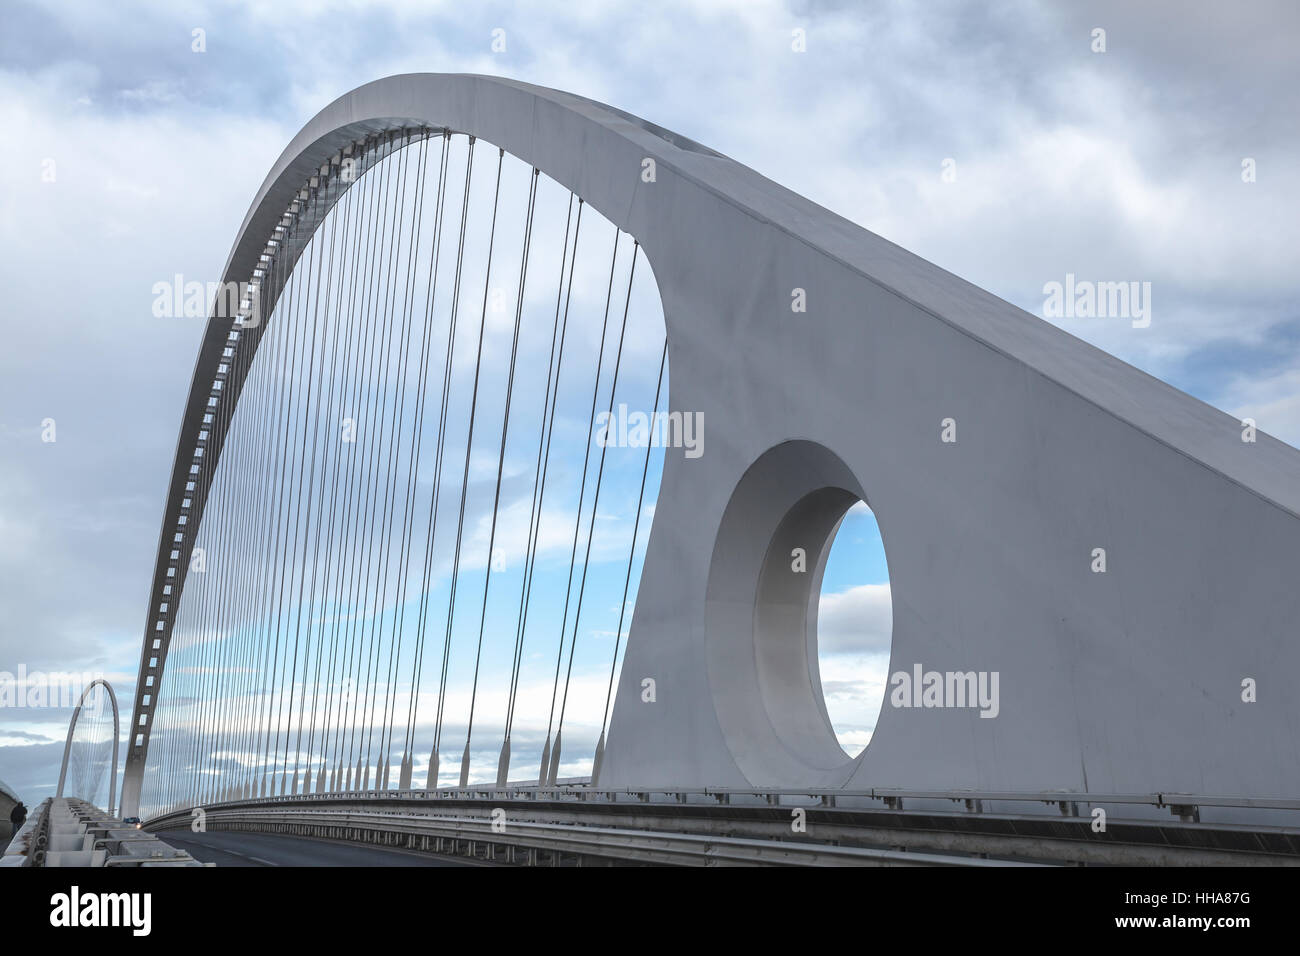 Santiago Calatrava Bridges, Reggio Emilia, Italy Stock Photo